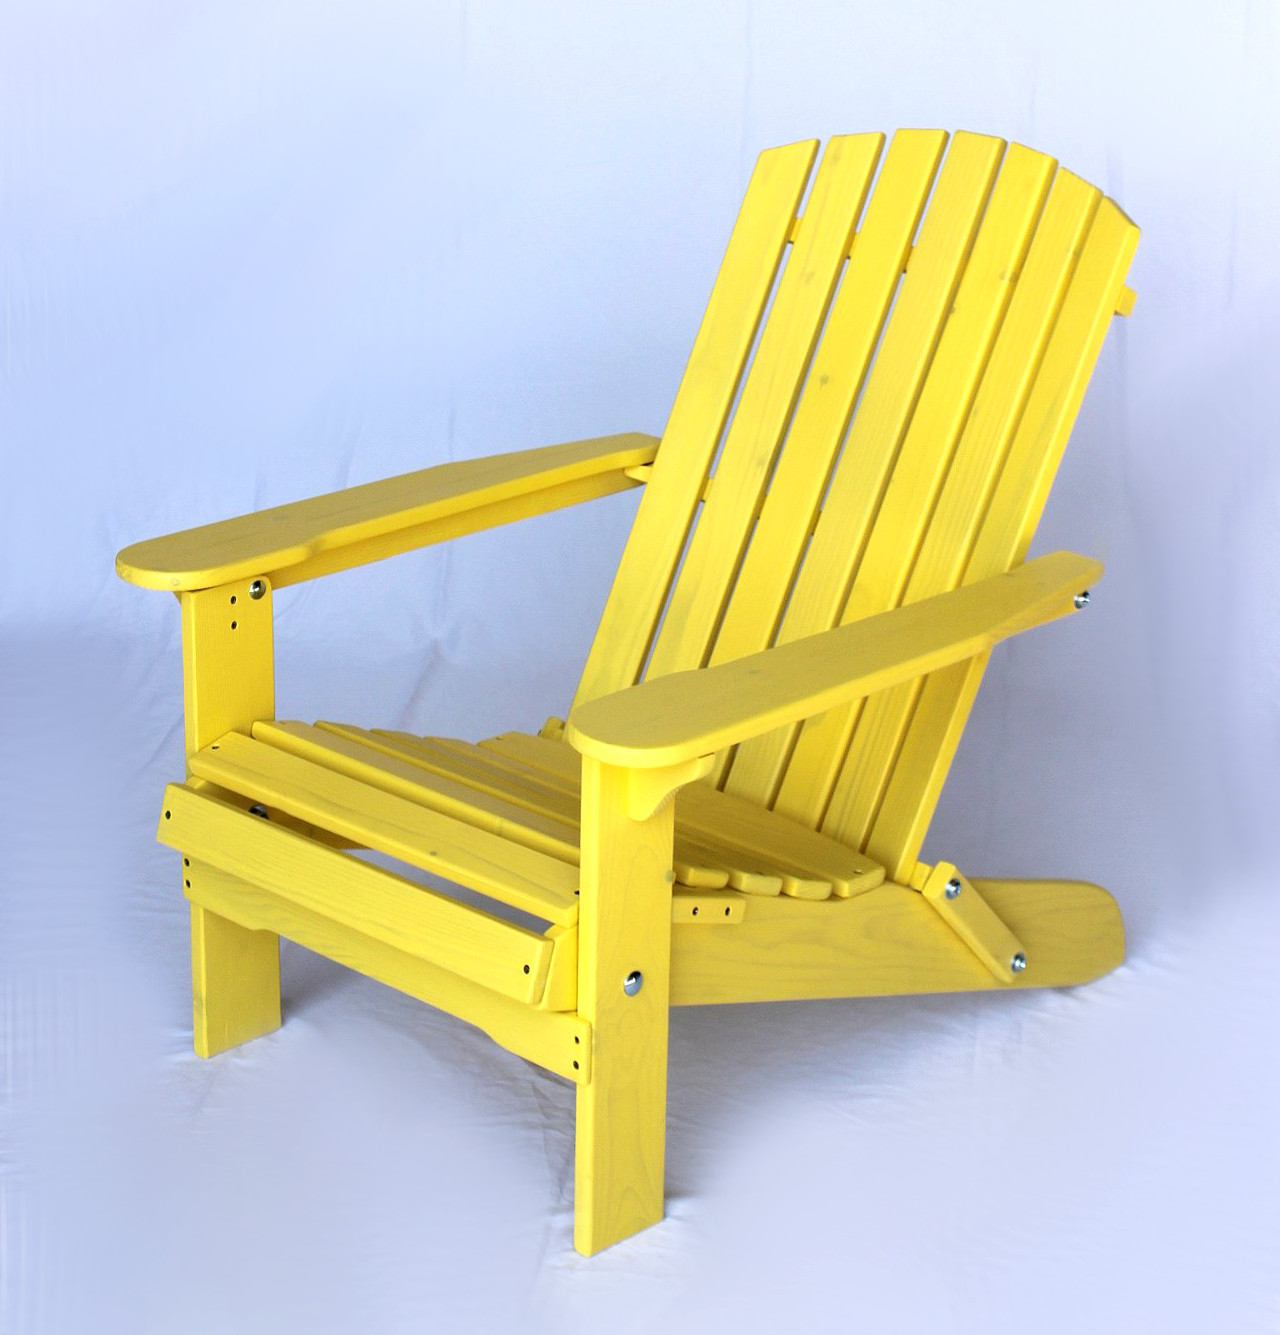 DanDiBo Strandstuhl Sonnenstuhl Adirondack aus klappbar Holz Gartenstuhl Deckchair-DanDiBo Chair Gelb